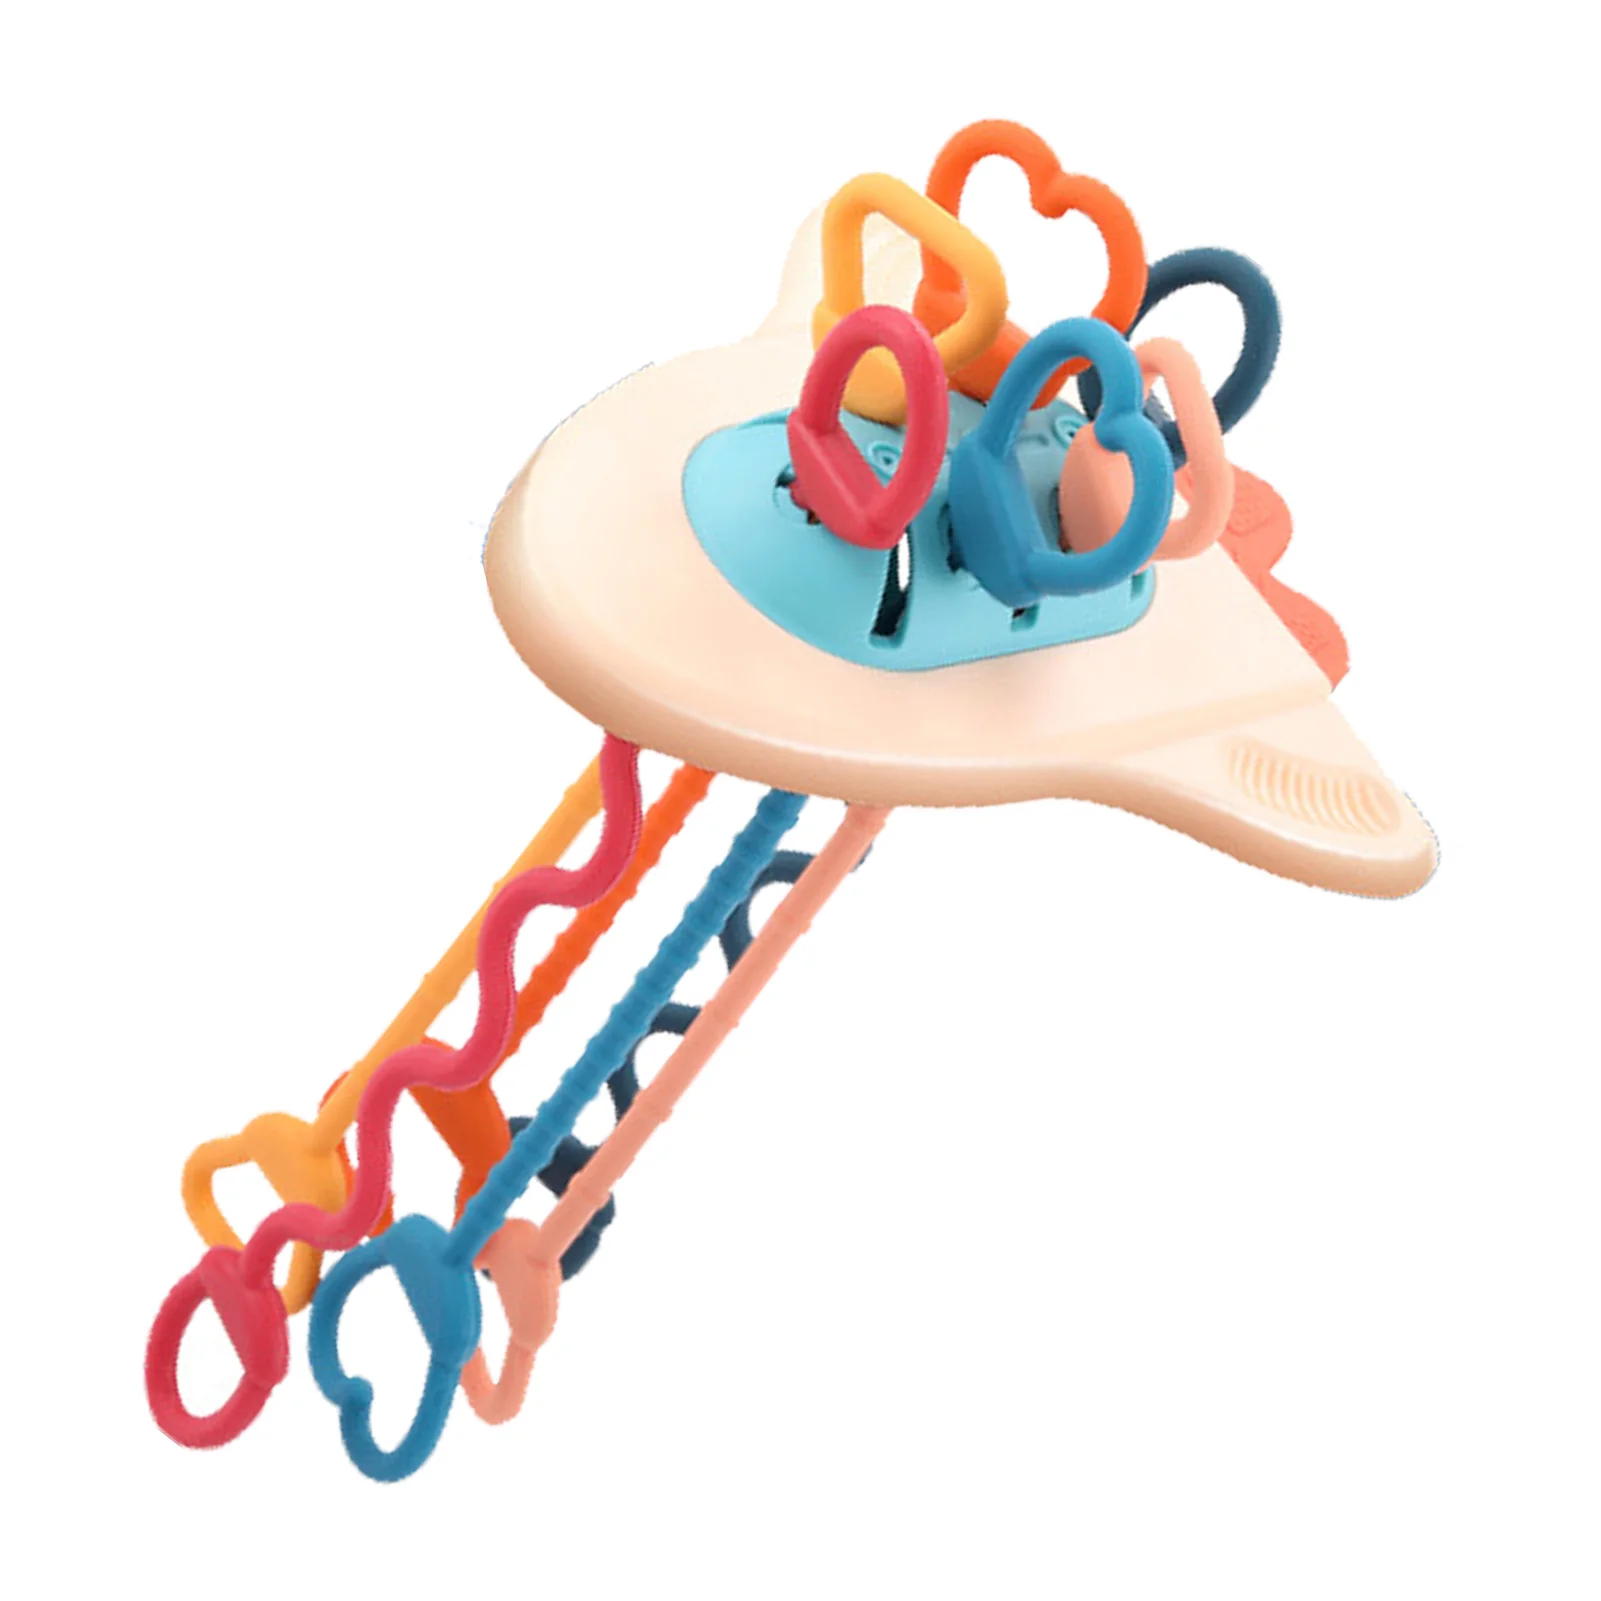 

Игрушка игрушечная Монтессори, развивающая Интерактивная нить для детей ясельного возраста, развивающая игрушка